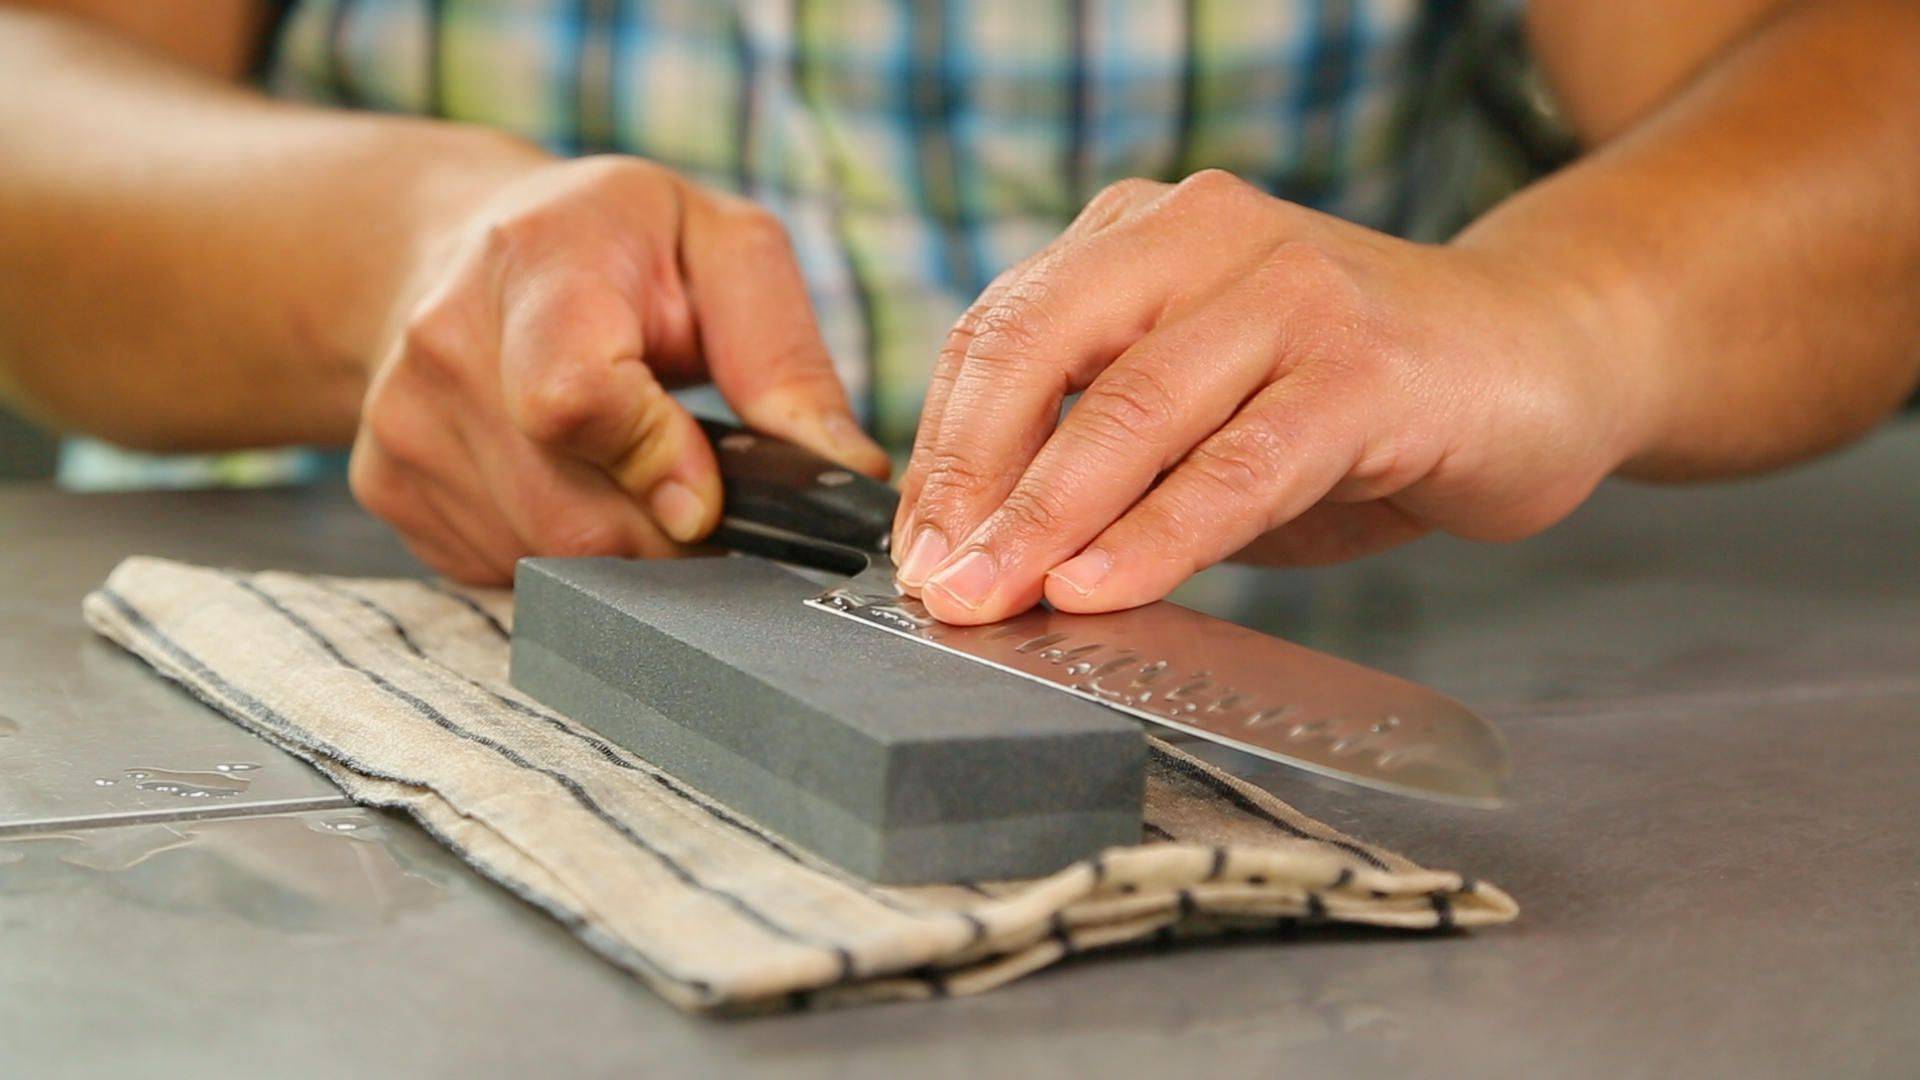 Правильная заточка кухонных ножей дома: методика и необходимые приспособления | ваша кухня правильная заточка кухонных ножей дома